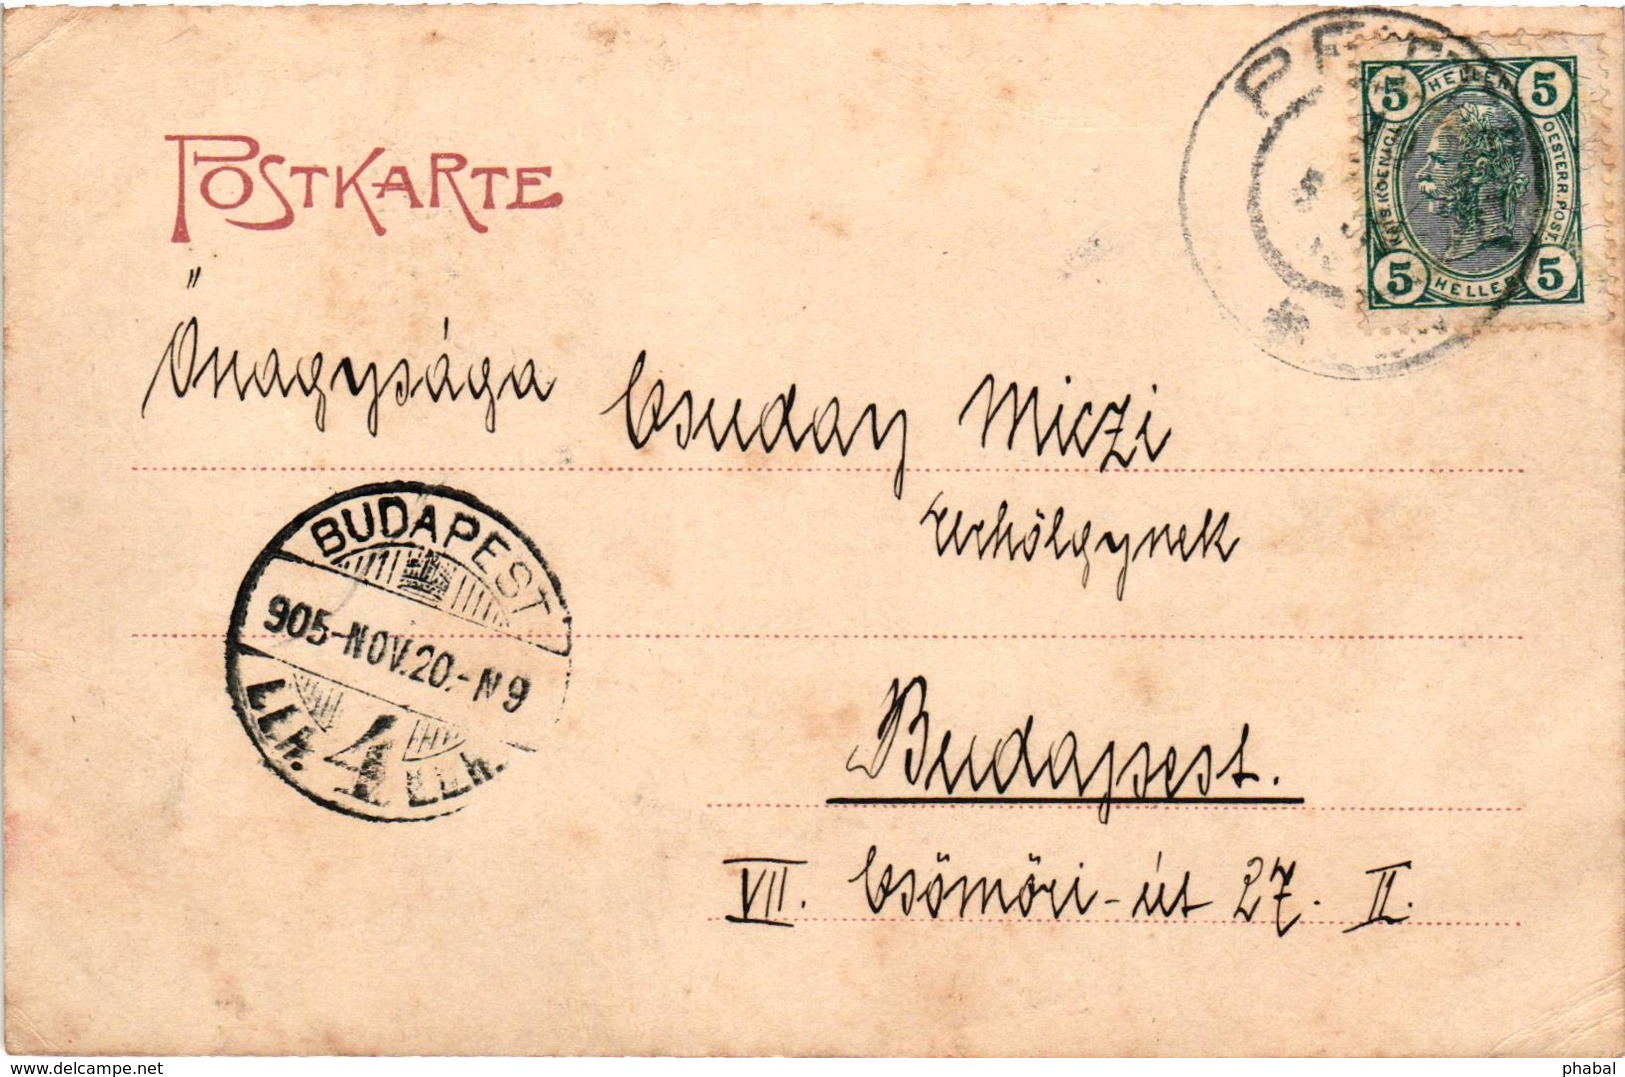 Slovenia, Ptuj, Pettau, Town Scene, Old Postcard 1905 - Slovenië